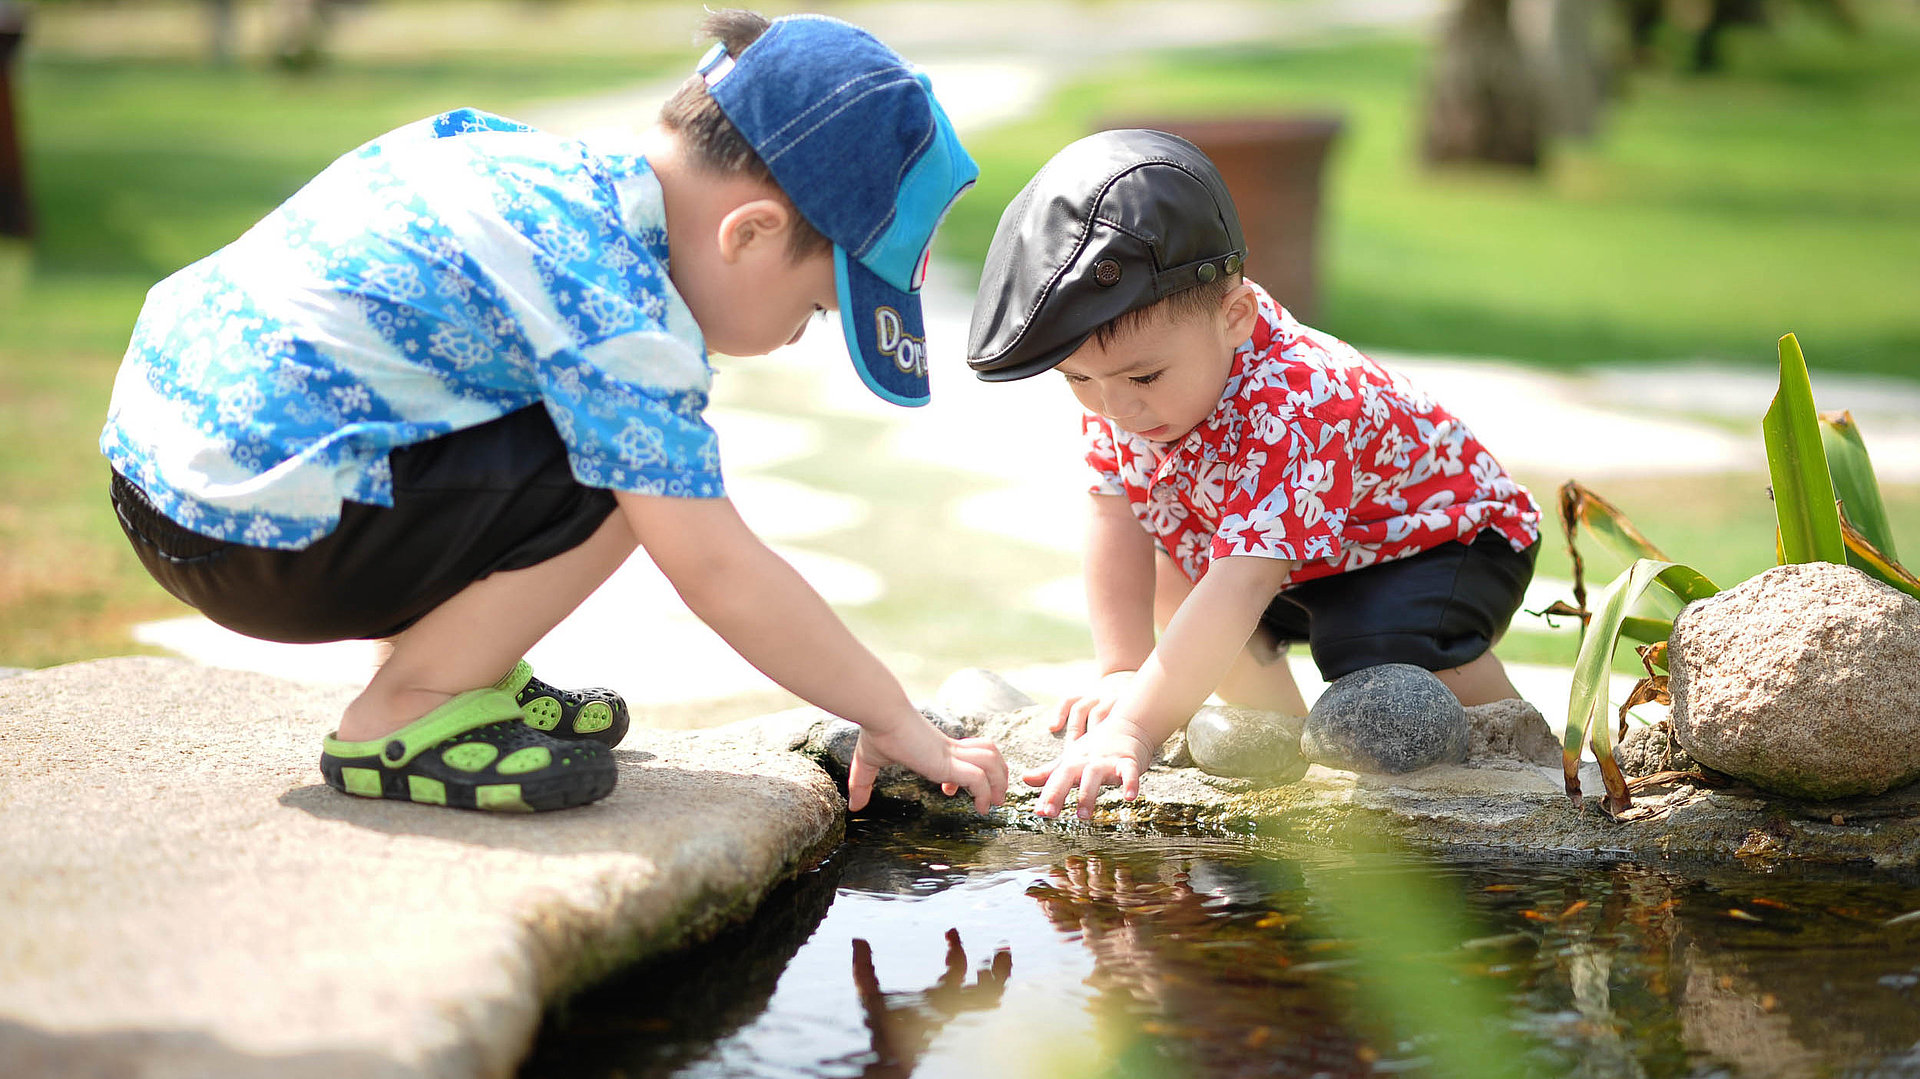 Kinderfreundliche Gastronomie im Fichtelgebirge - zwei Kleinkinder spielen bei schönem Wetter zusammen am Teich